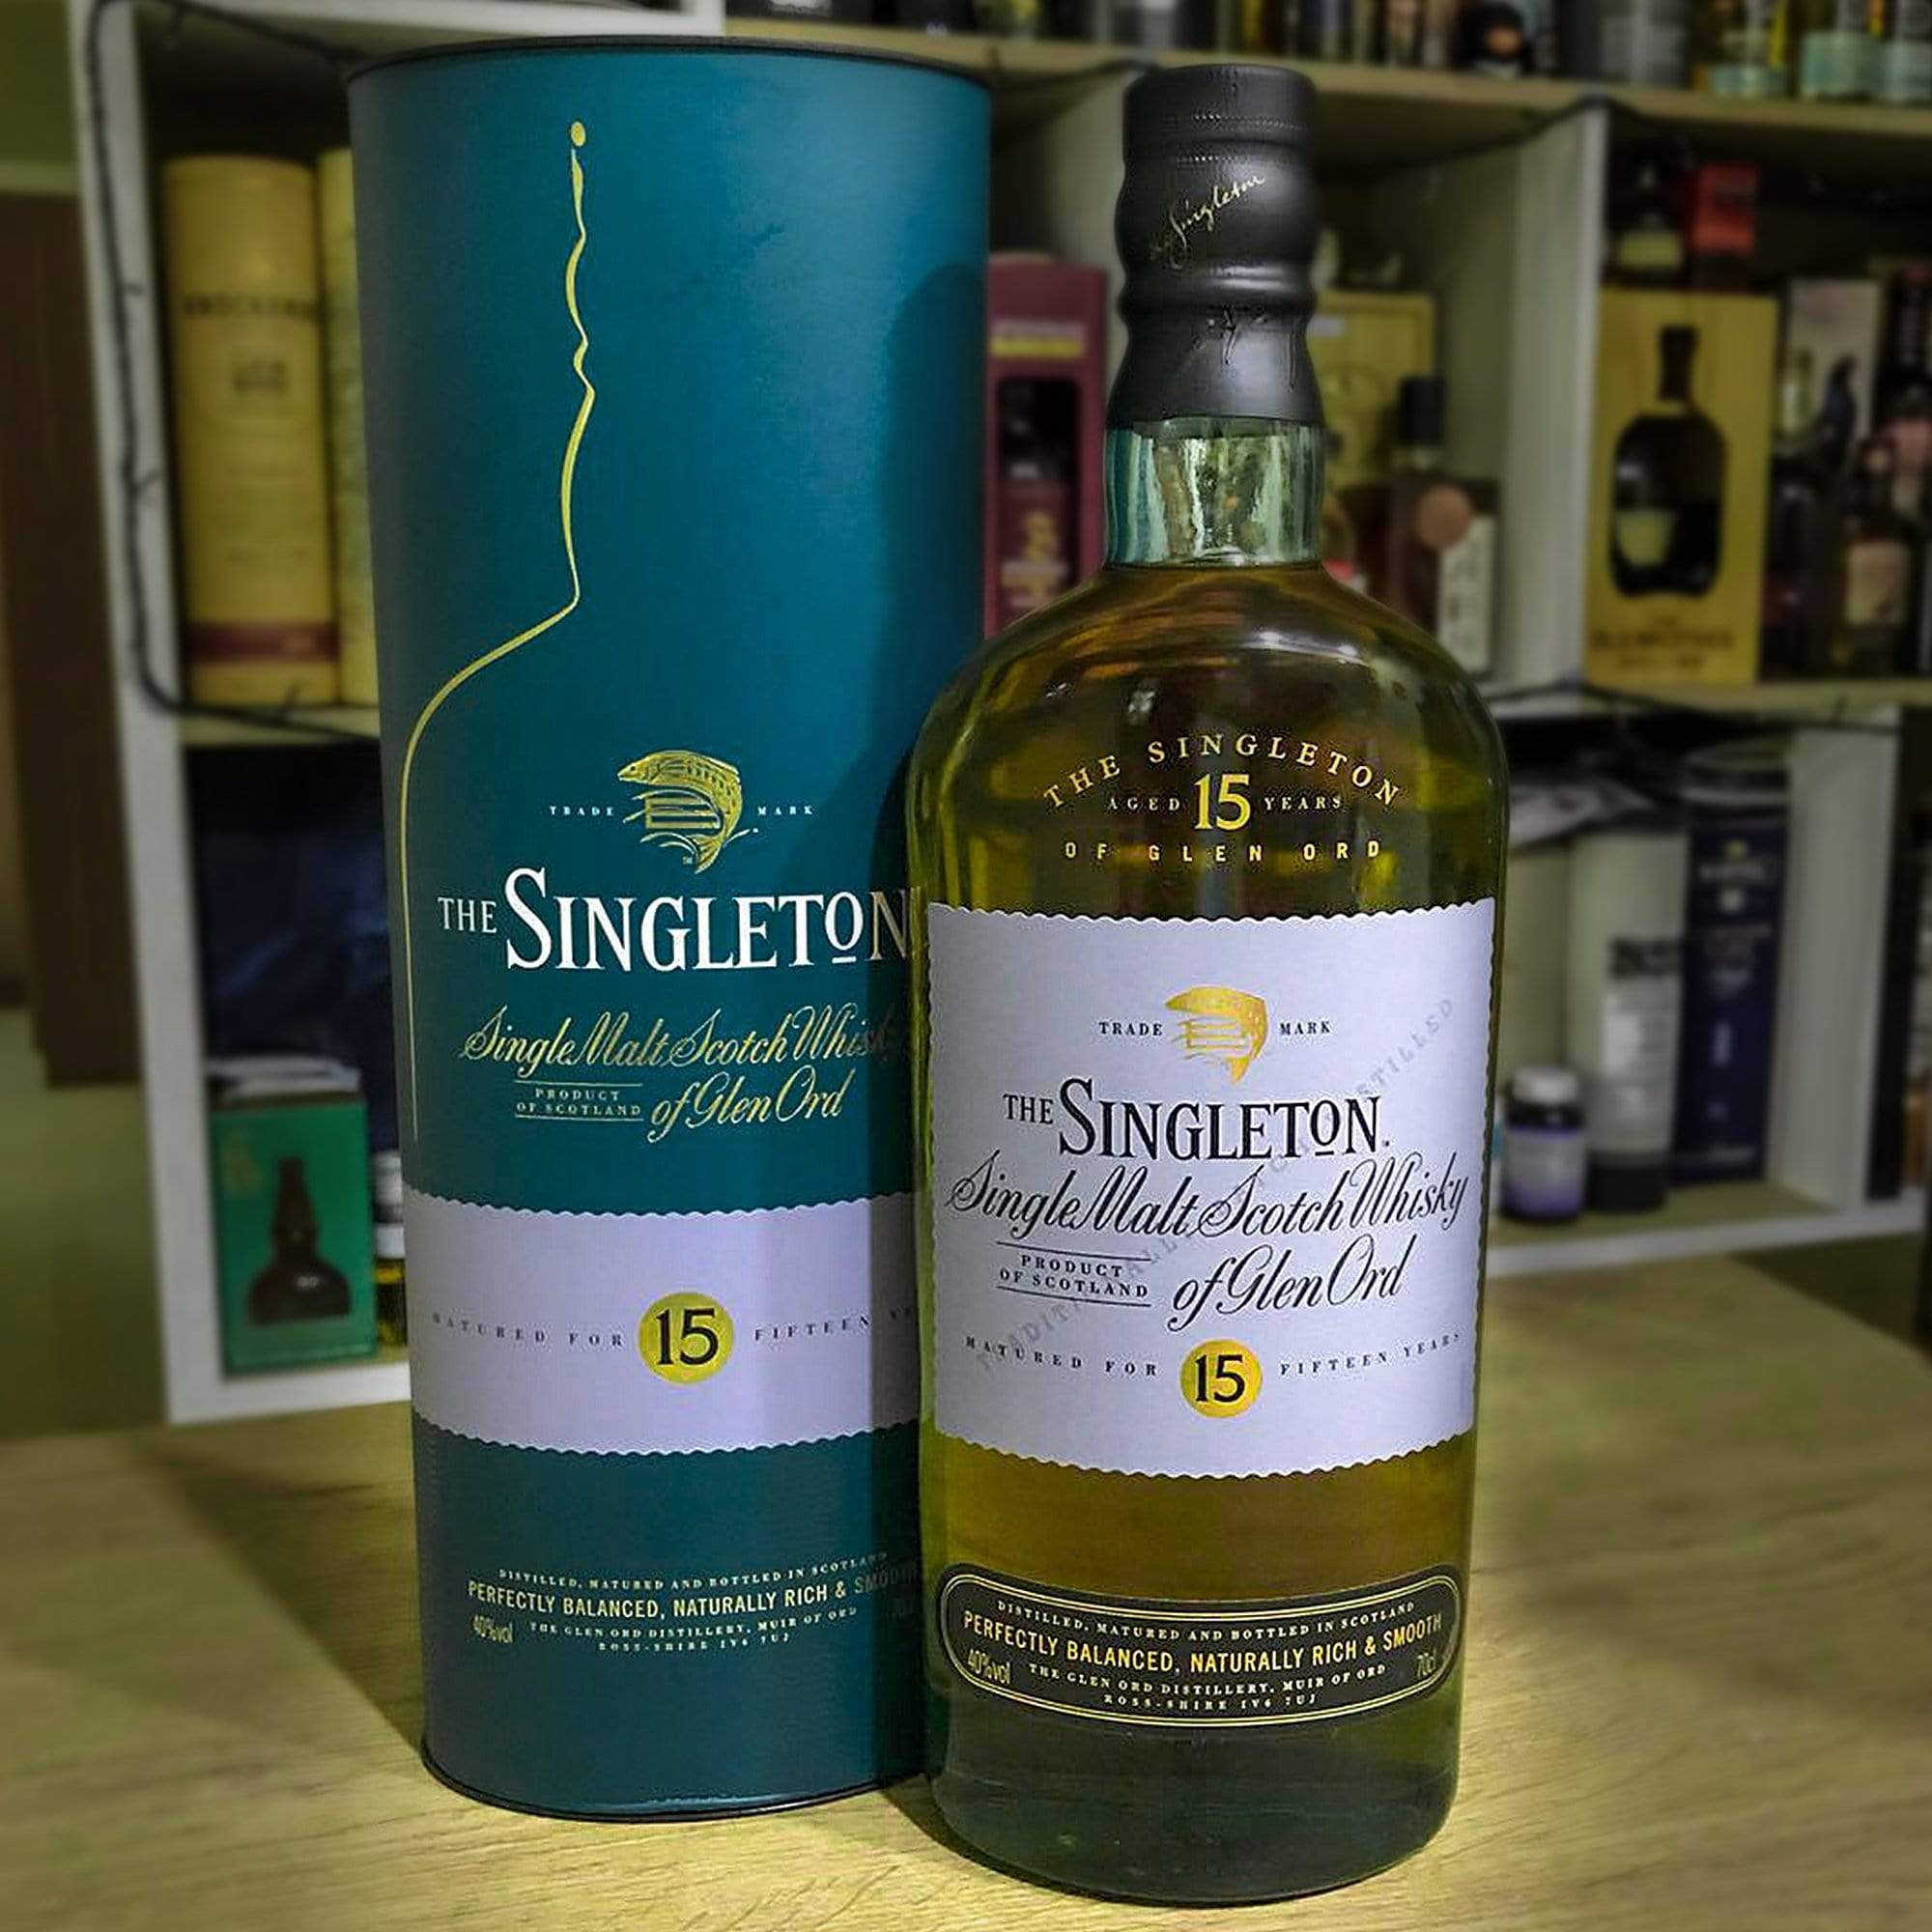 Singleton Singleton Whisky 70cl THE SINGLETON OF GLEN ORD 15YO